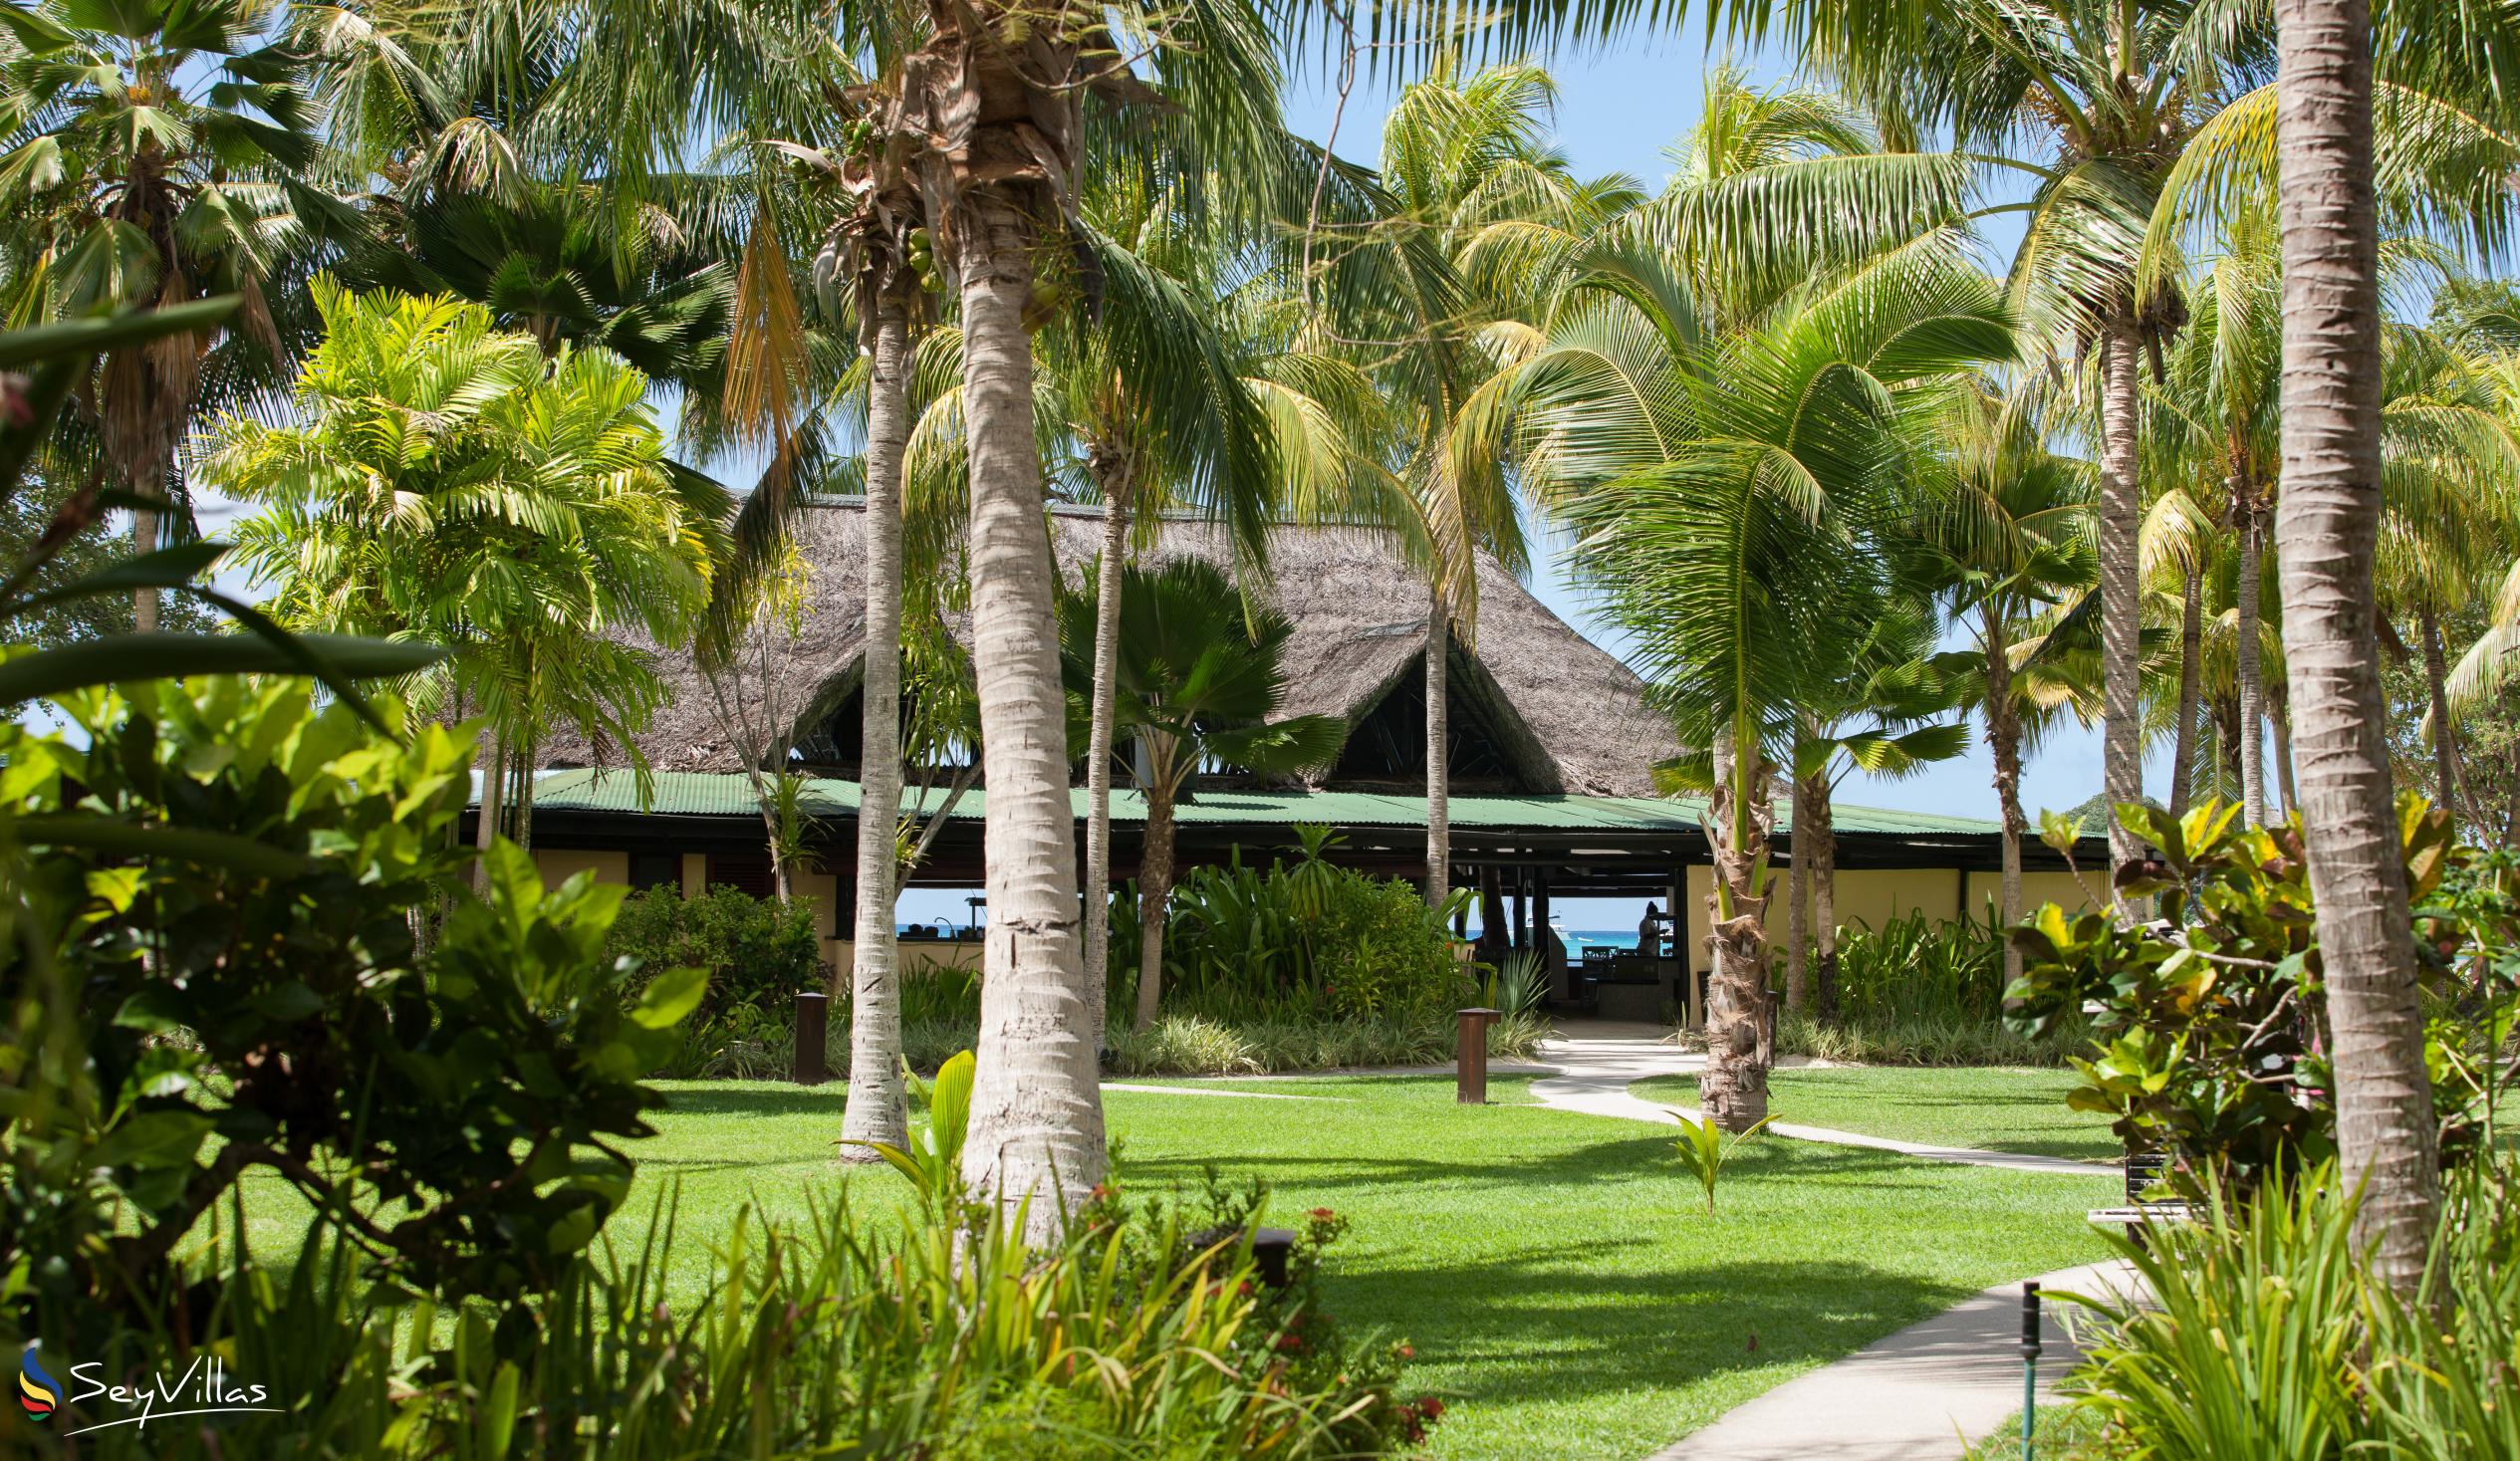 Foto 10: Paradise Sun Hotel - Aussenbereich - Praslin (Seychellen)